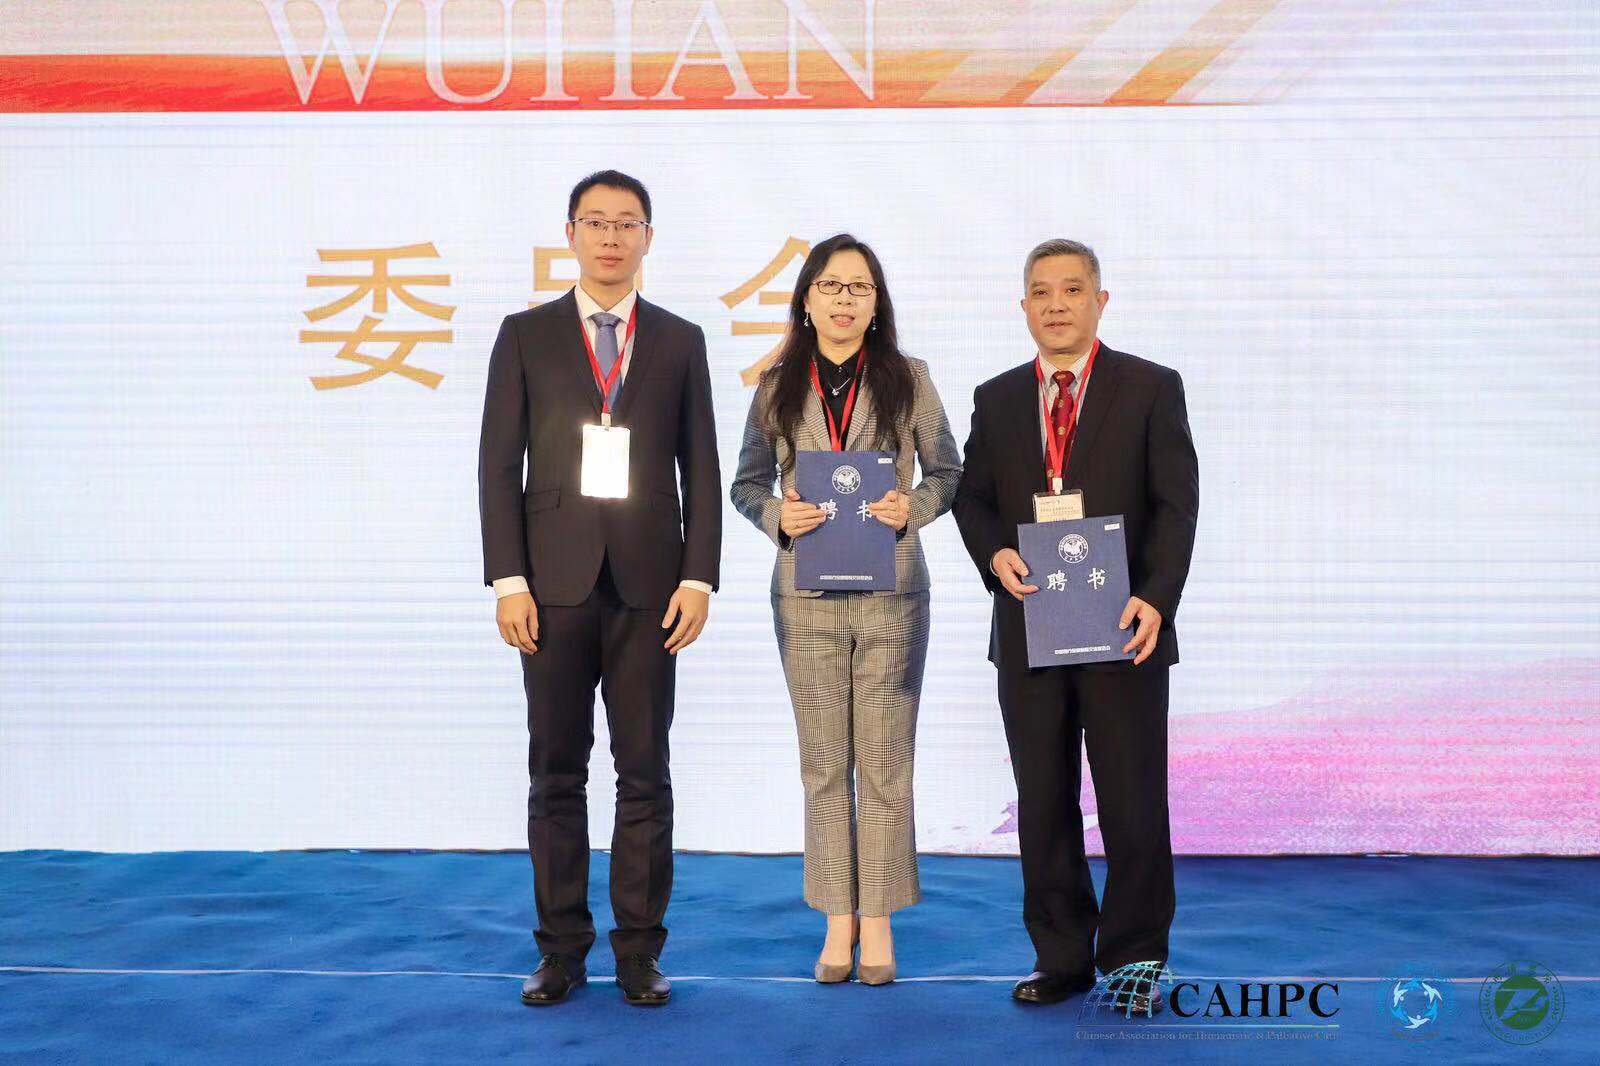 03 刘巍教授当选为第二届CAHPC名誉主任委员、陈元教授当选为第二届CAHPC主任委员.jpg